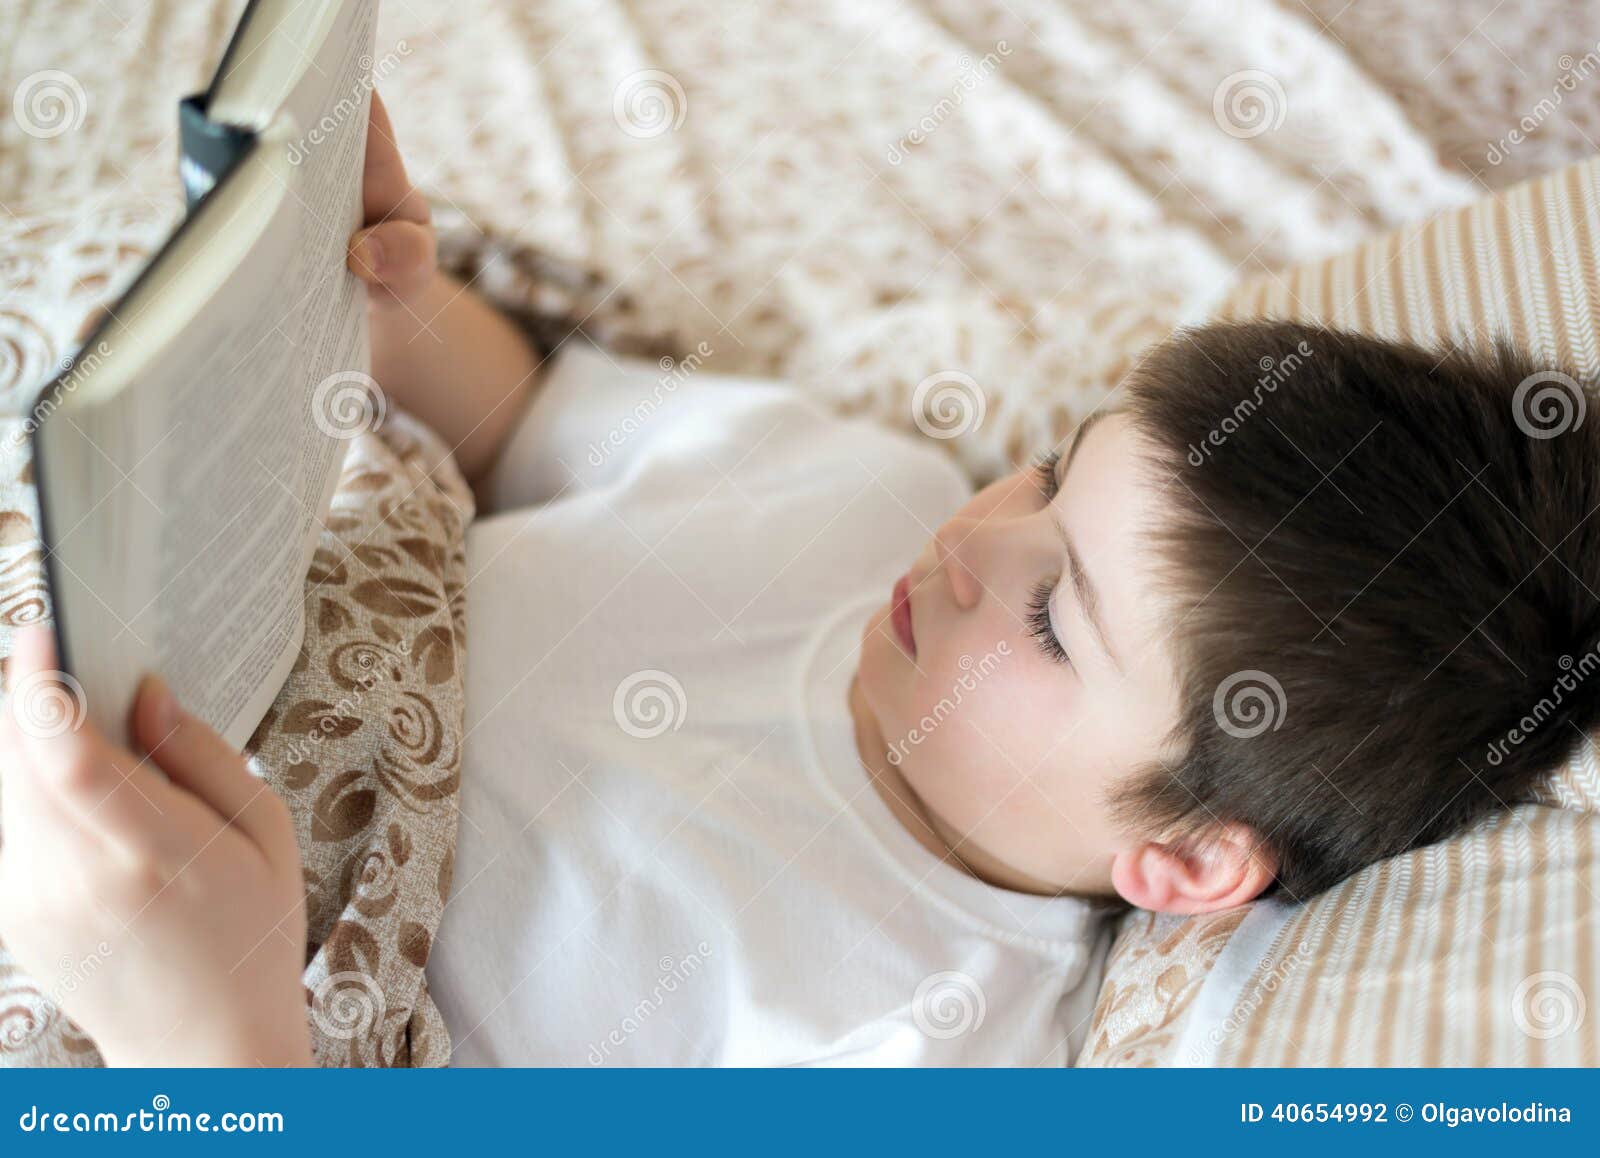 Читать лежа в постели